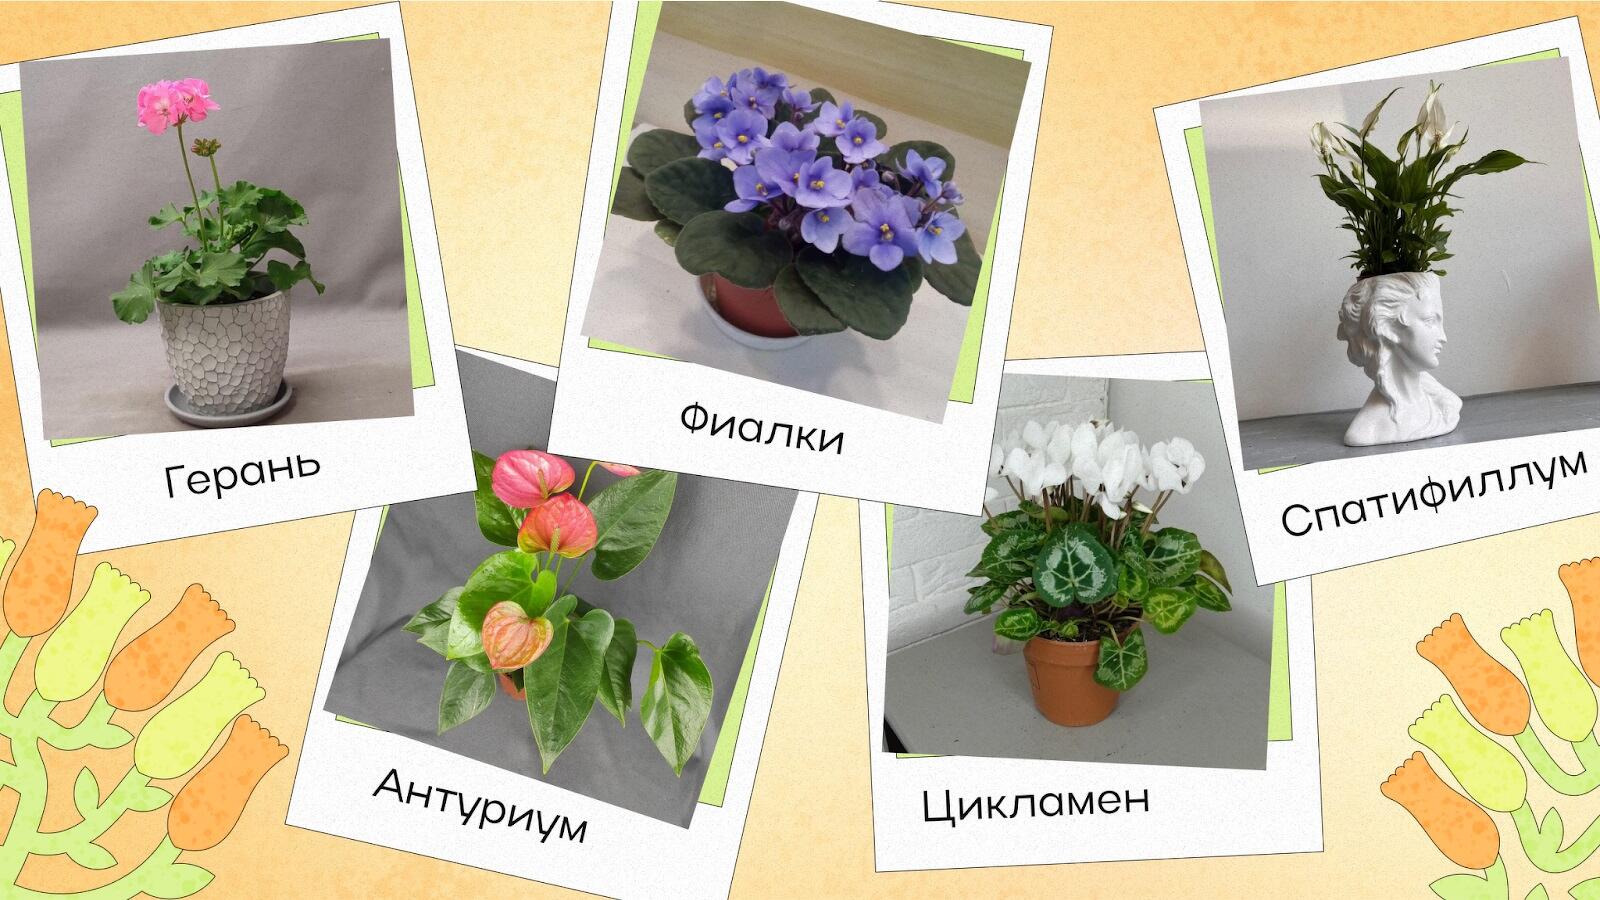 Нецветущие комнатные растения — список с фото и названиями